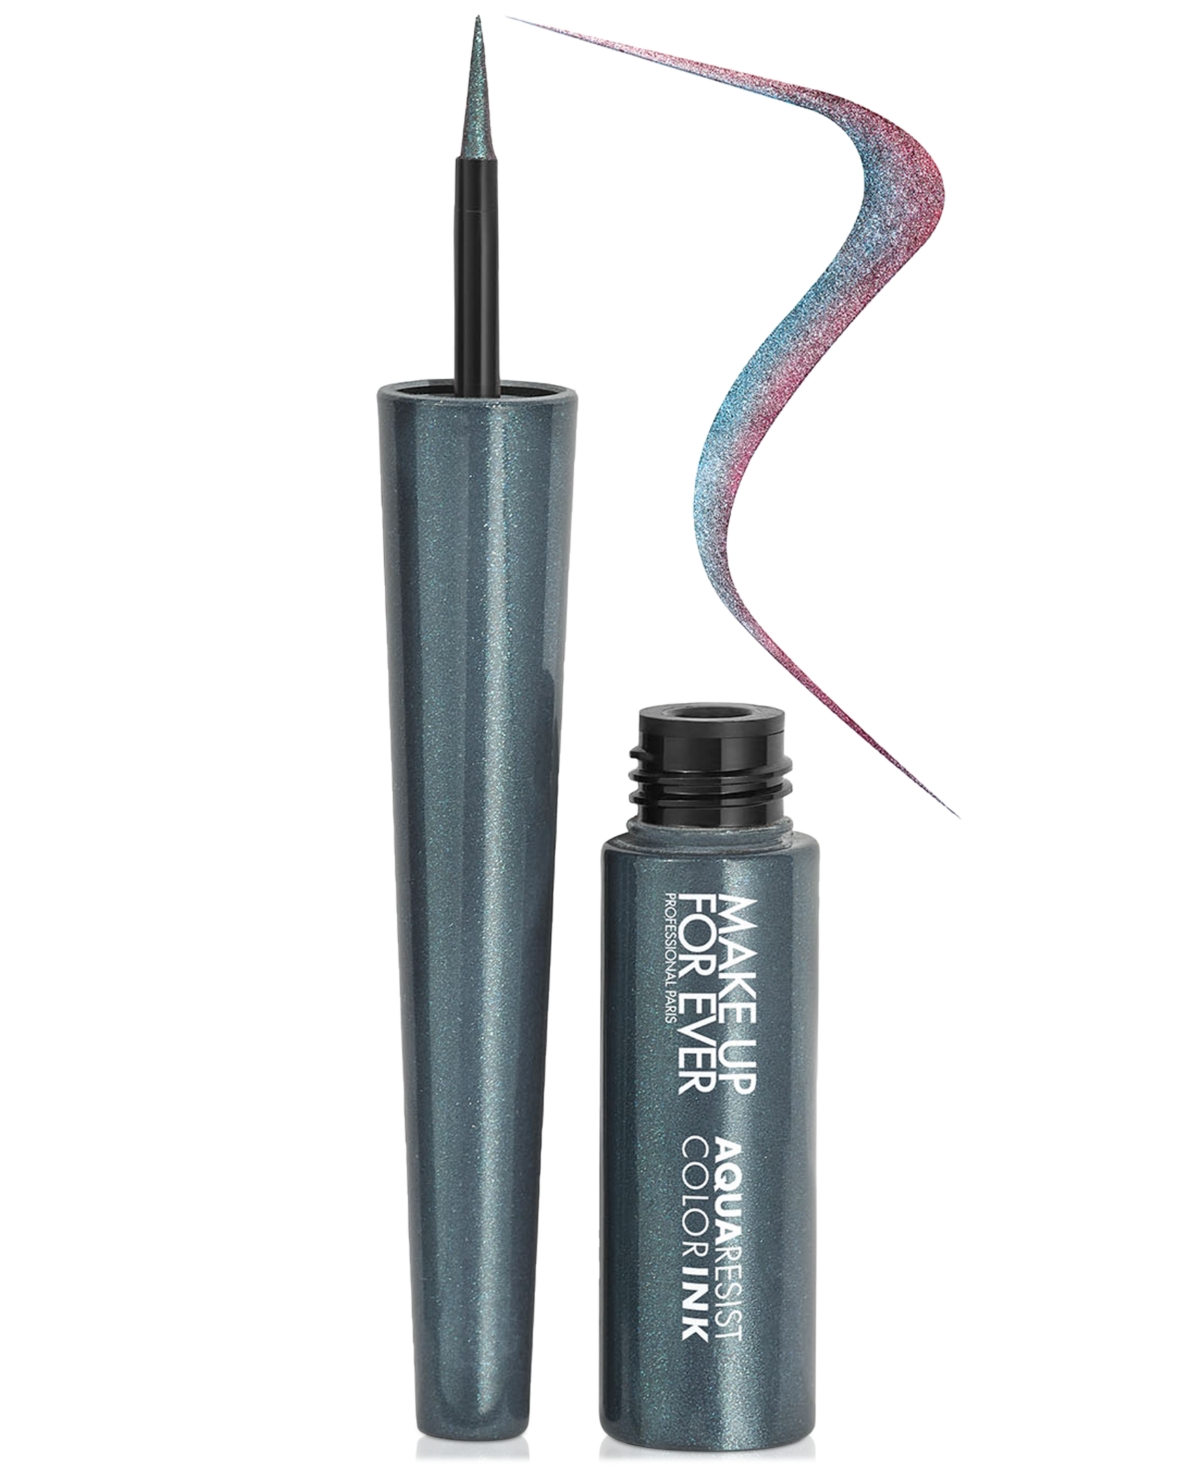 Make Up For Ever Aqua Resist Color Ink Liquid Eyeliner In Striking Chameleon - Duo-chrome Blue,vio